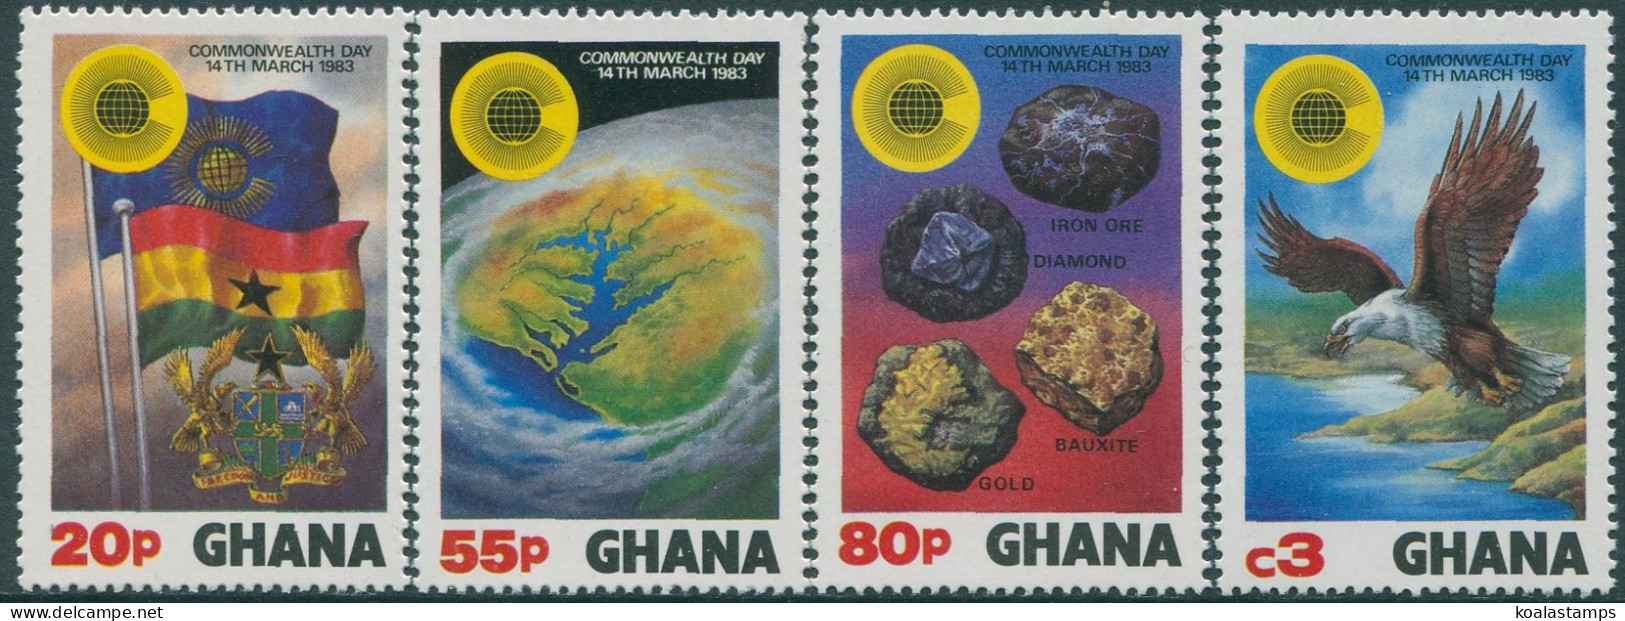 Ghana 1983 SG1019-1022 Commonwealth Day Set MNH - Ghana (1957-...)